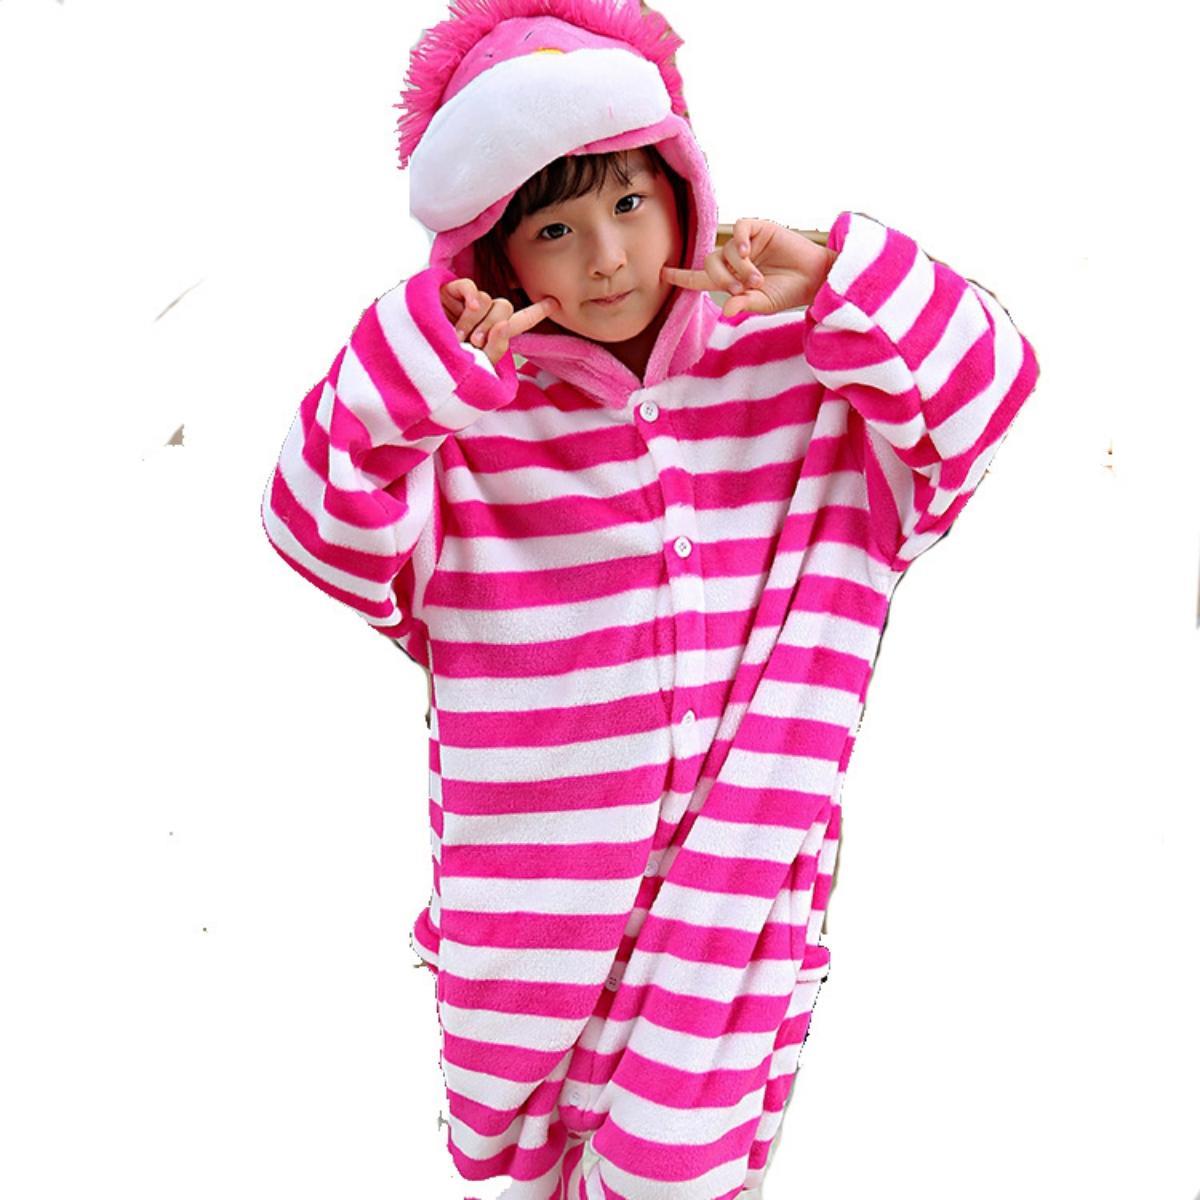 Kids Cheshire Cat Onesie Animal Kigurumi Costume Bodysuit Outfit